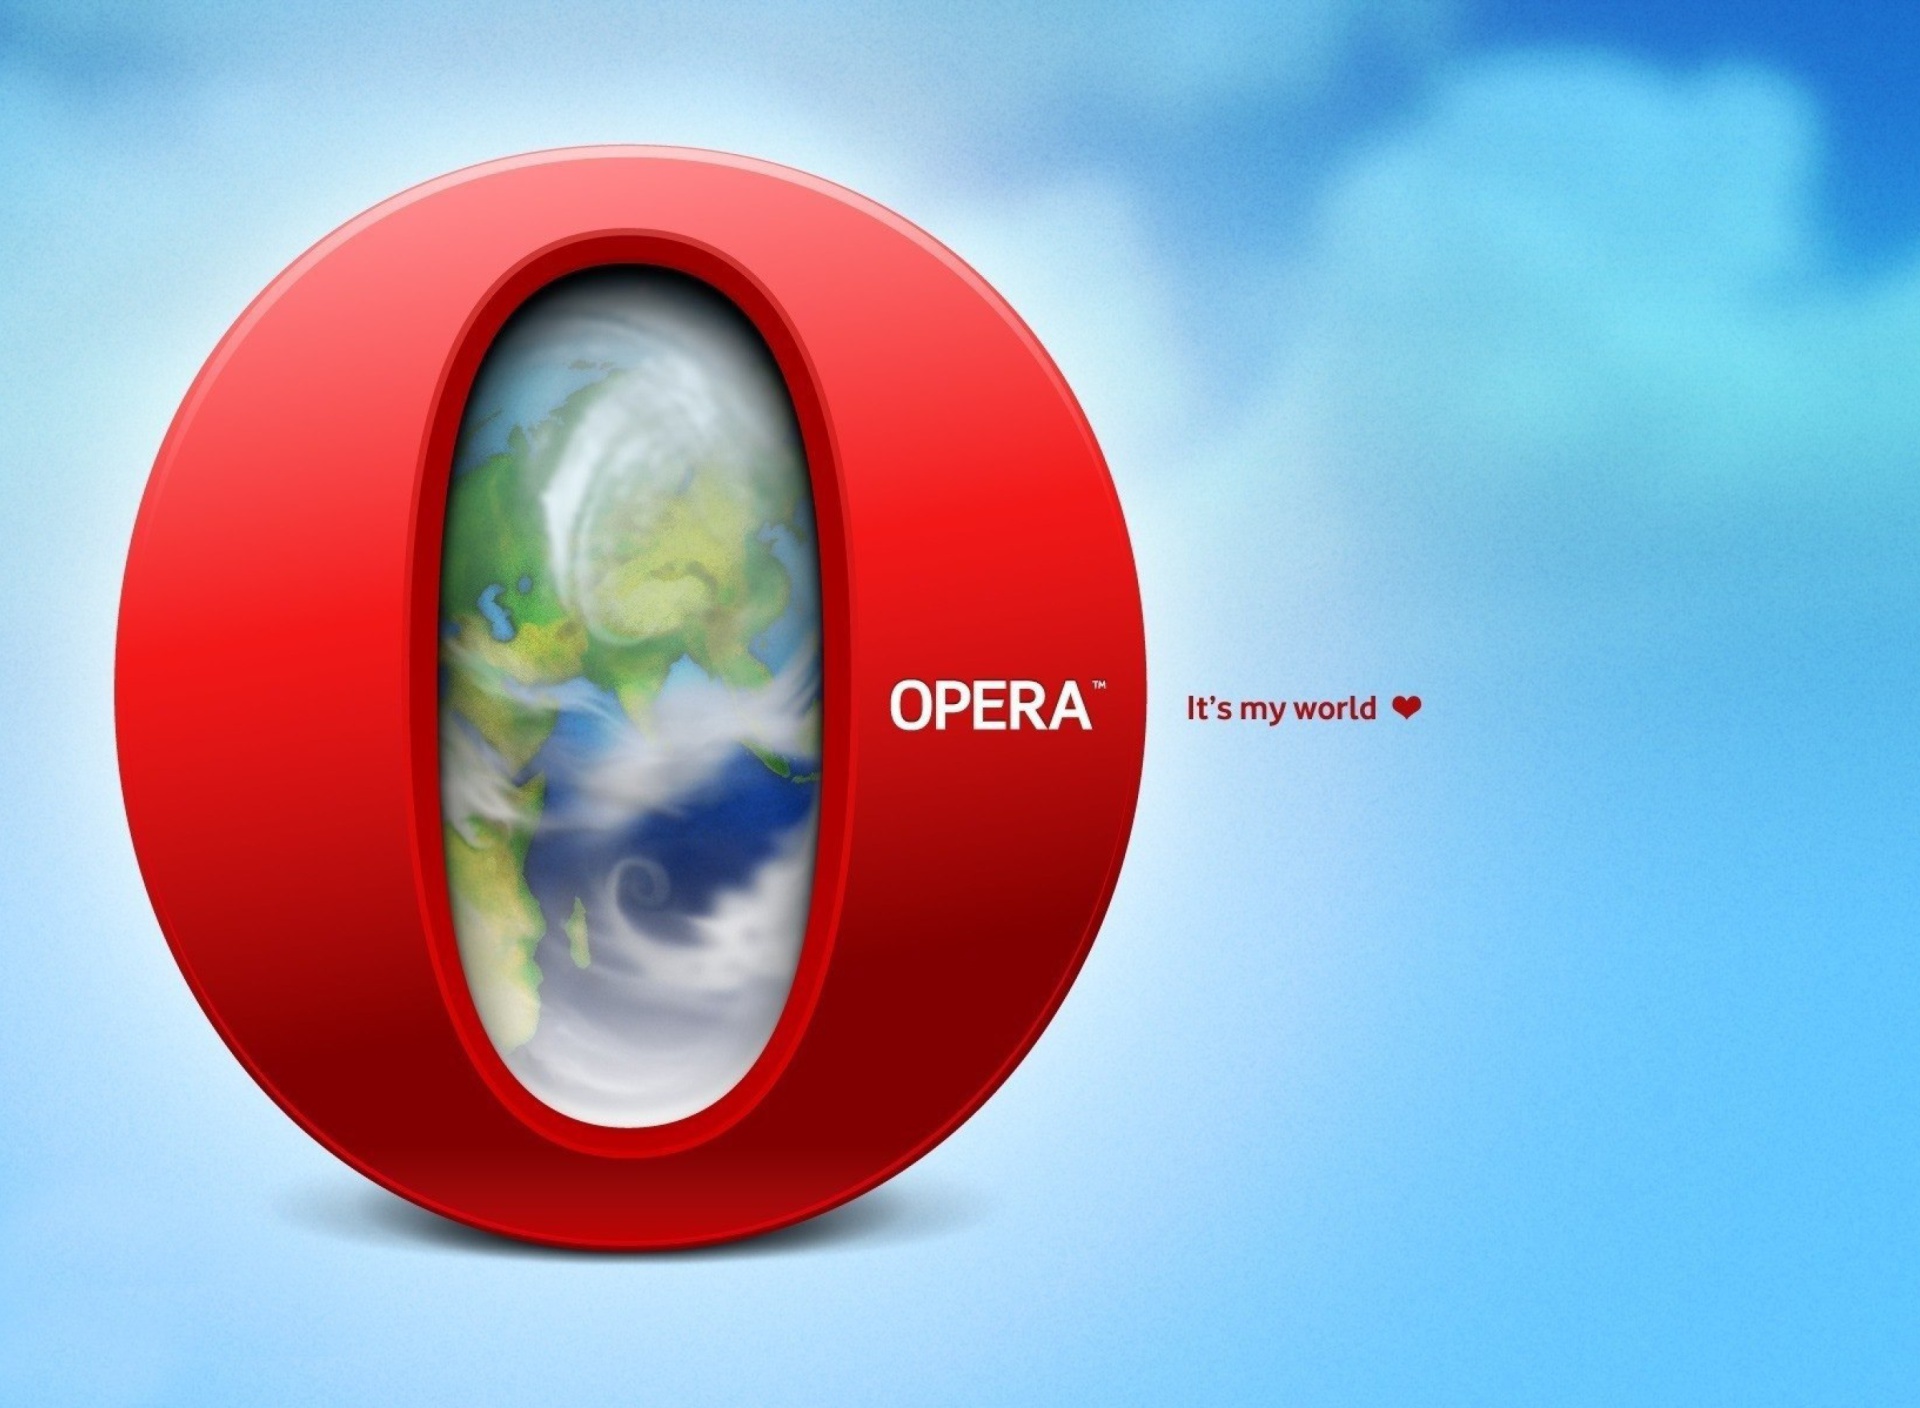 opera mini download for samsung